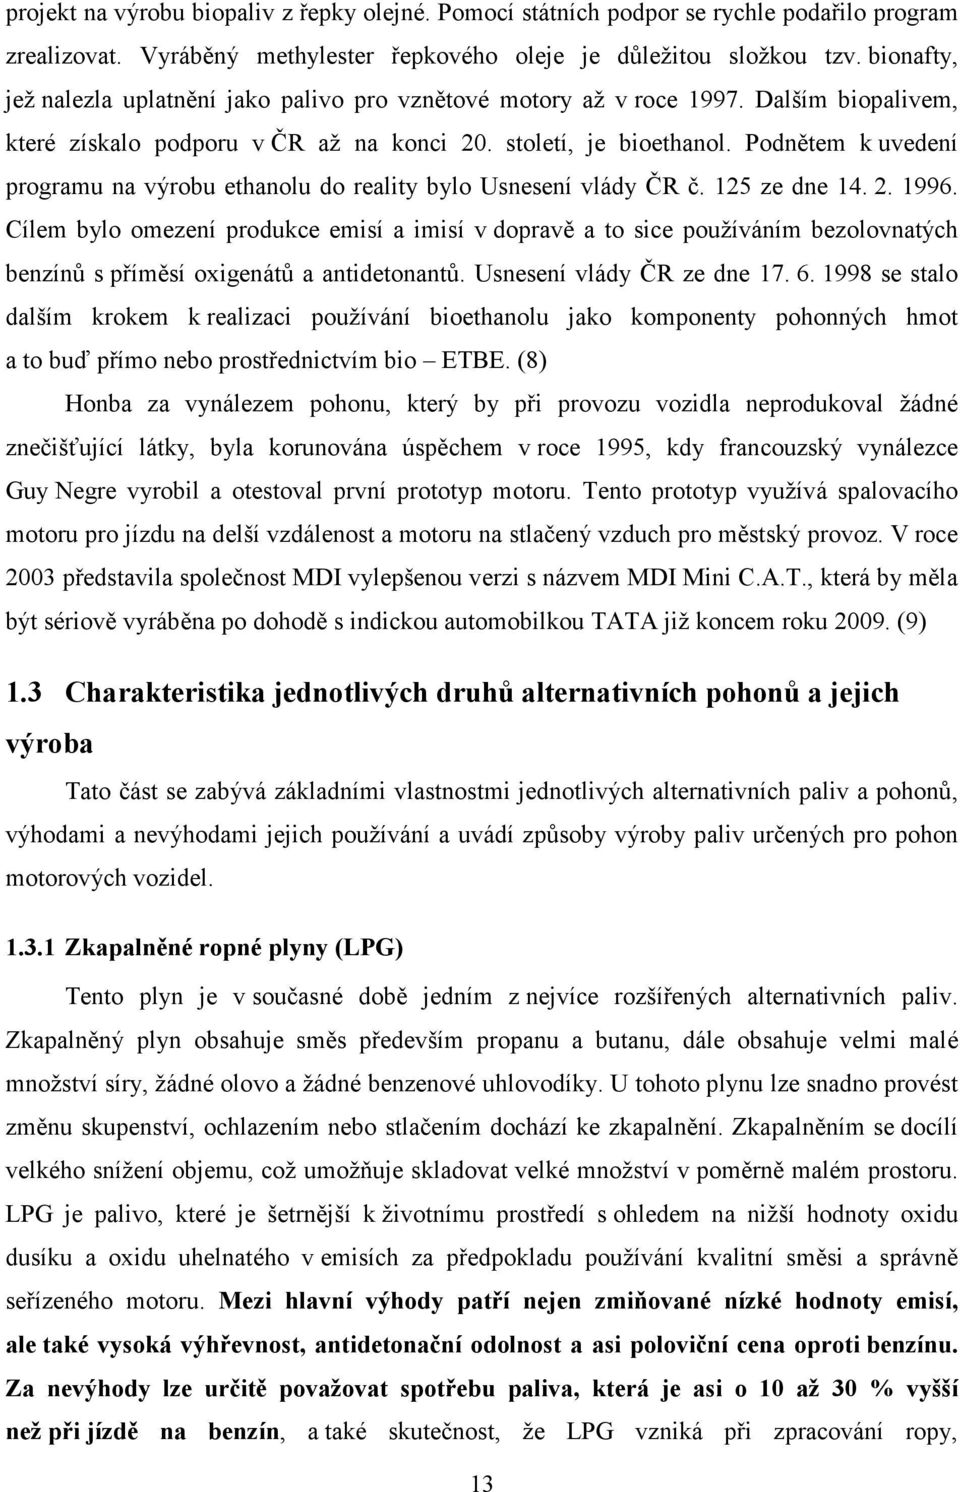 Podnětem k uvedení programu na výrobu ethanolu do reality bylo Usnesení vlády ČR č. 125 ze dne 14. 2. 1996.